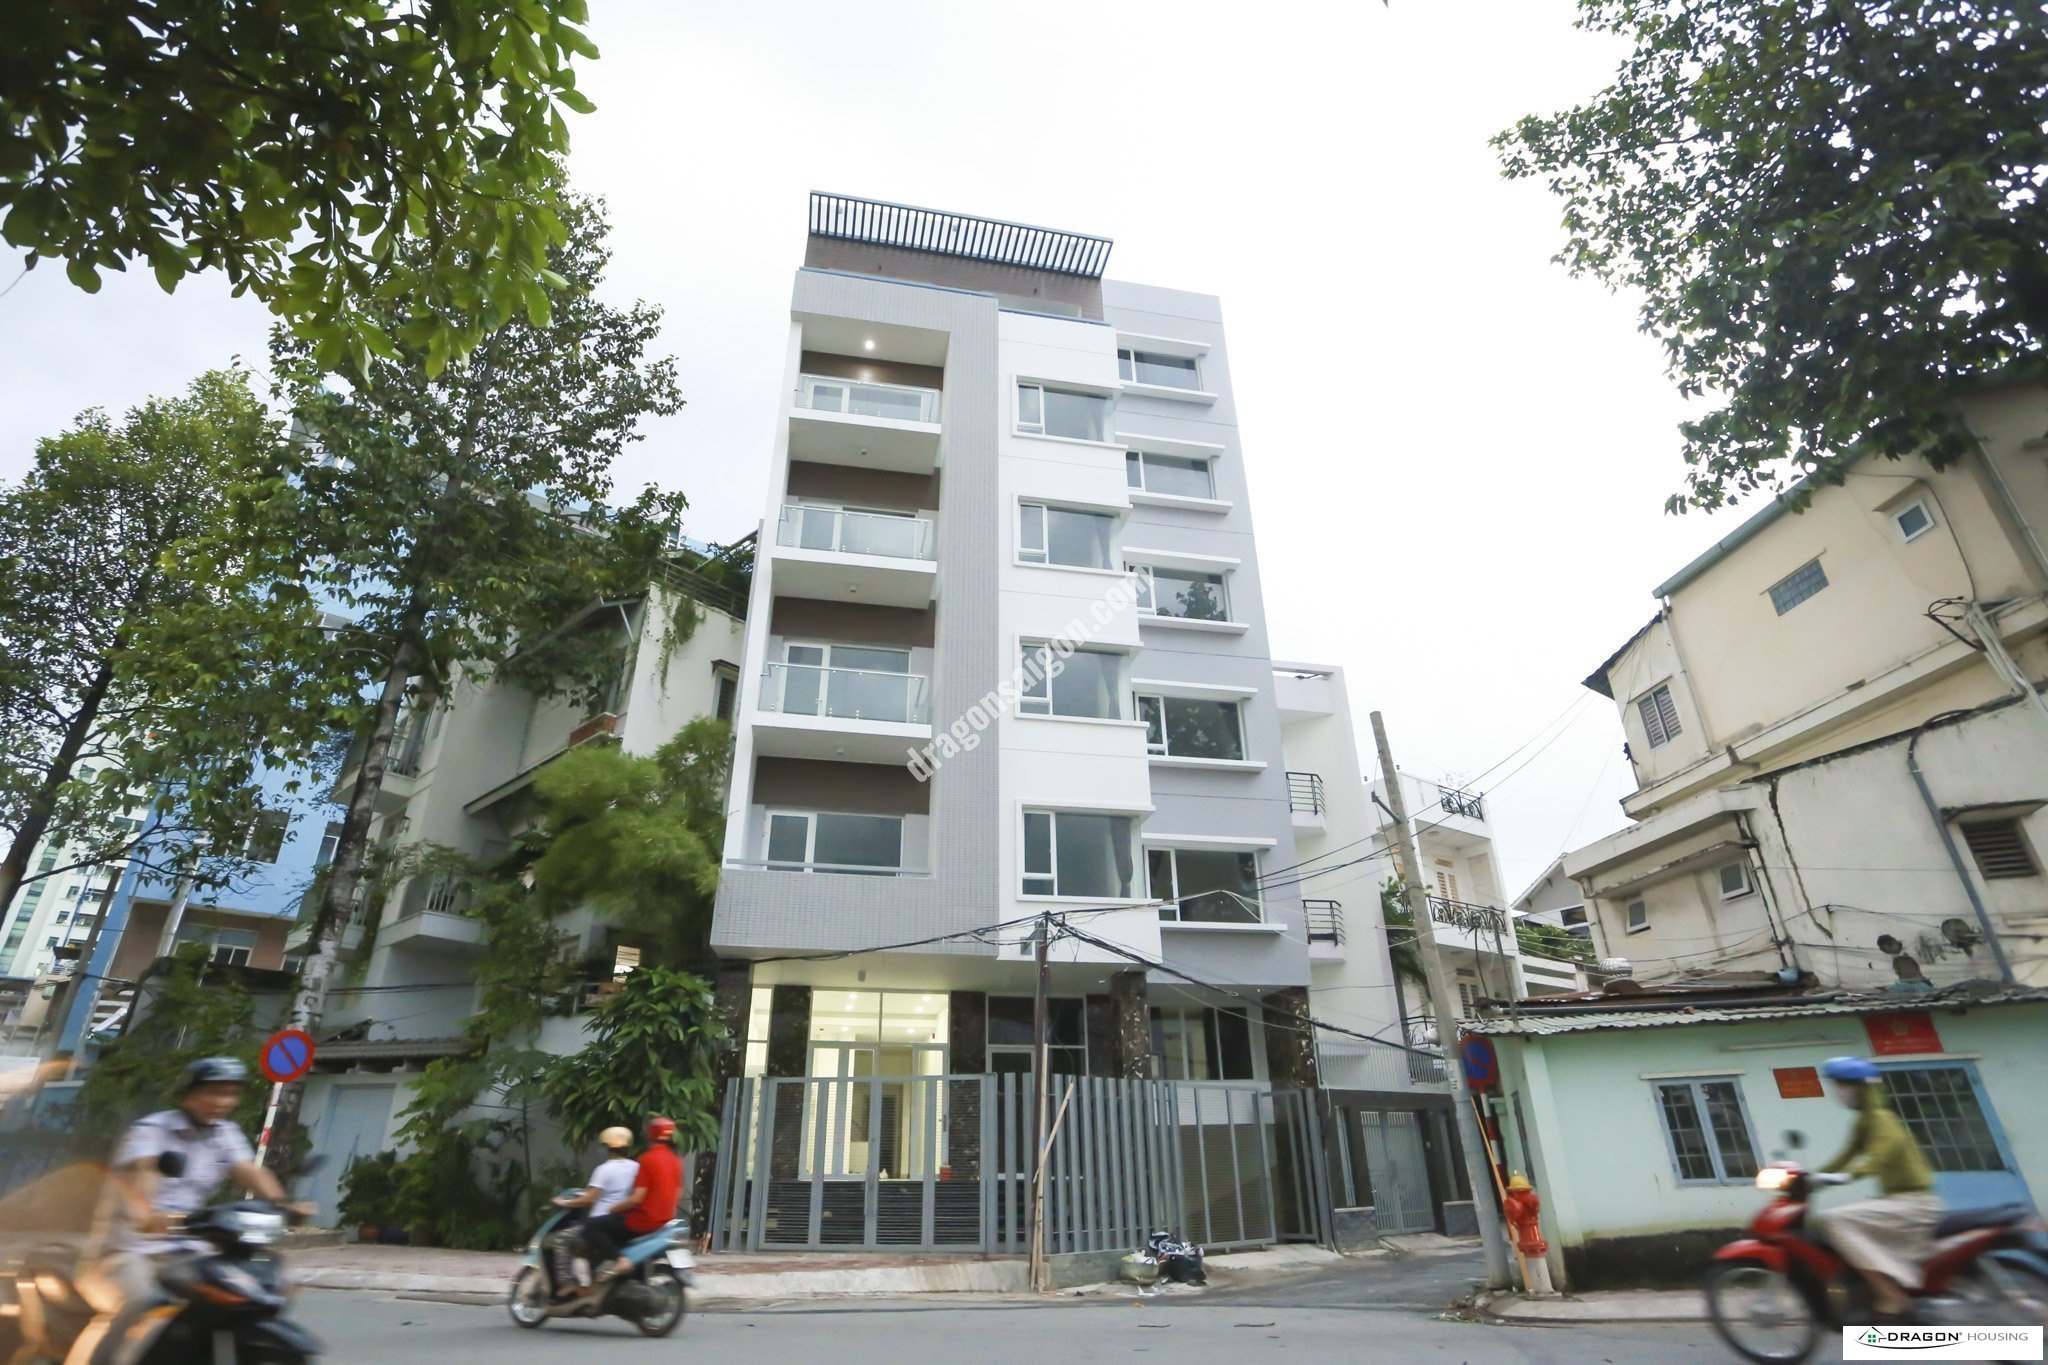 SUNRISE HOANG SA Serviced Apartment, 1bed, Dist.1 Ho Chi Minh City, Vietnam